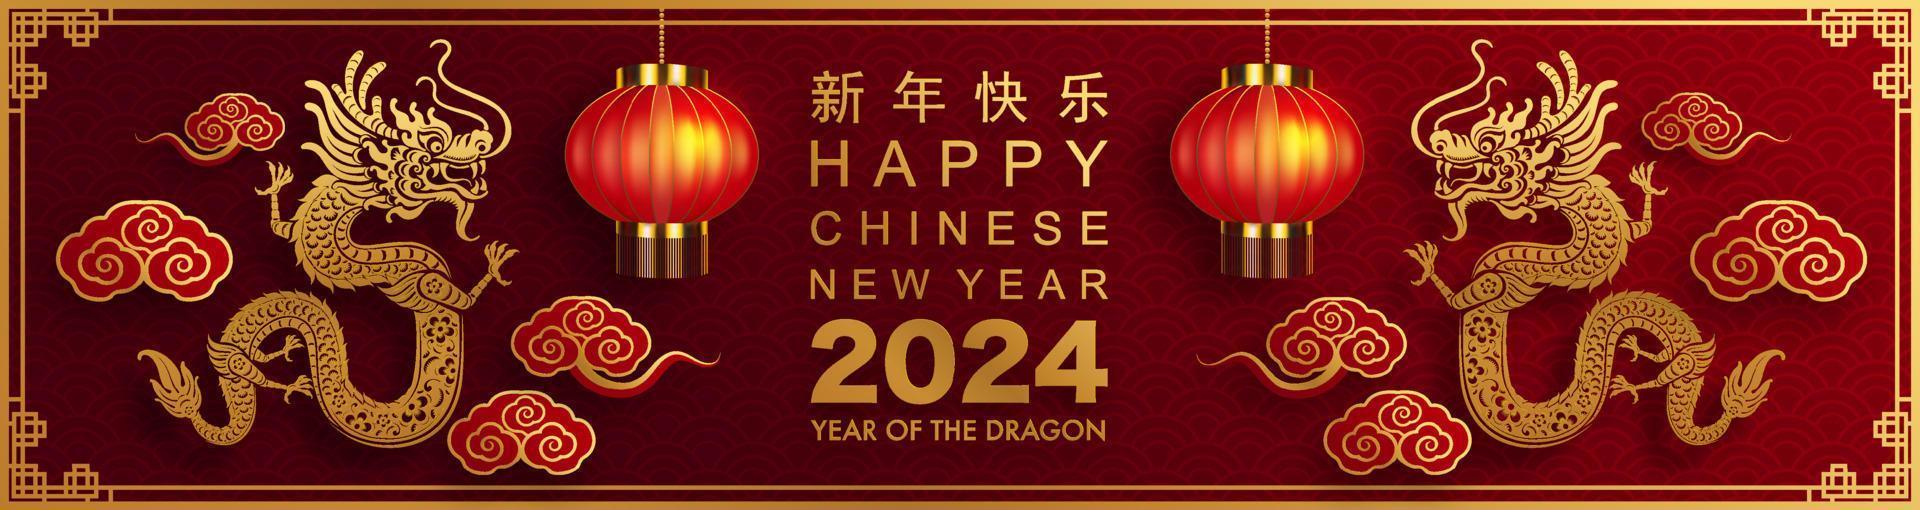 joyeux nouvel an chinois 2024 année du zodiaque dragon vecteur